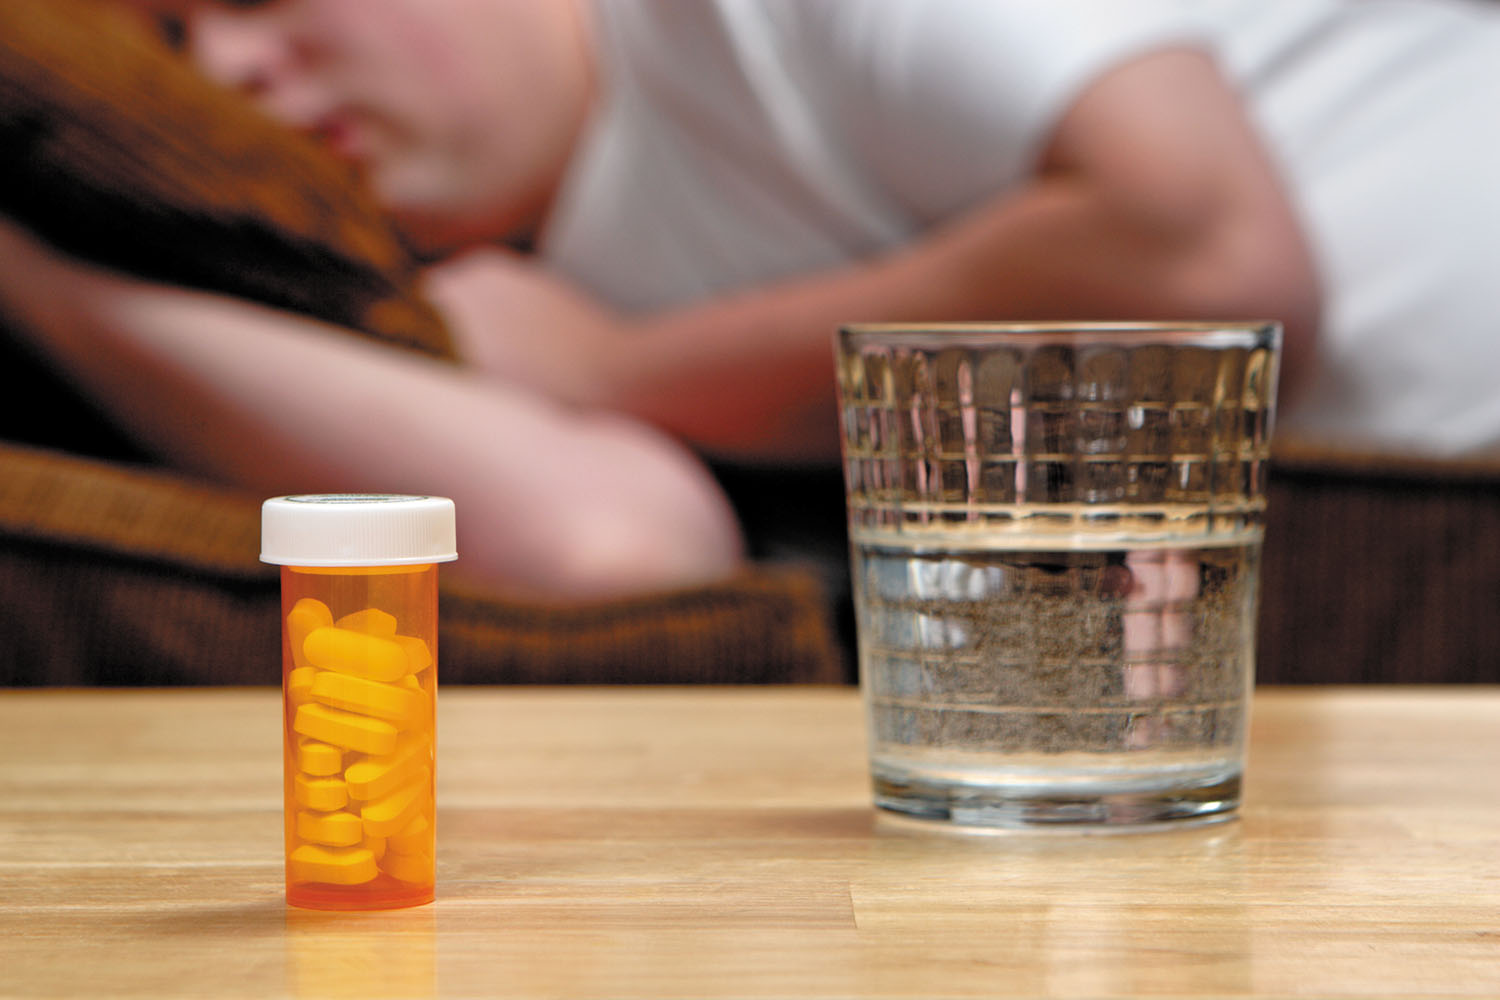 are drugstore sleep aids safe? - harvard health